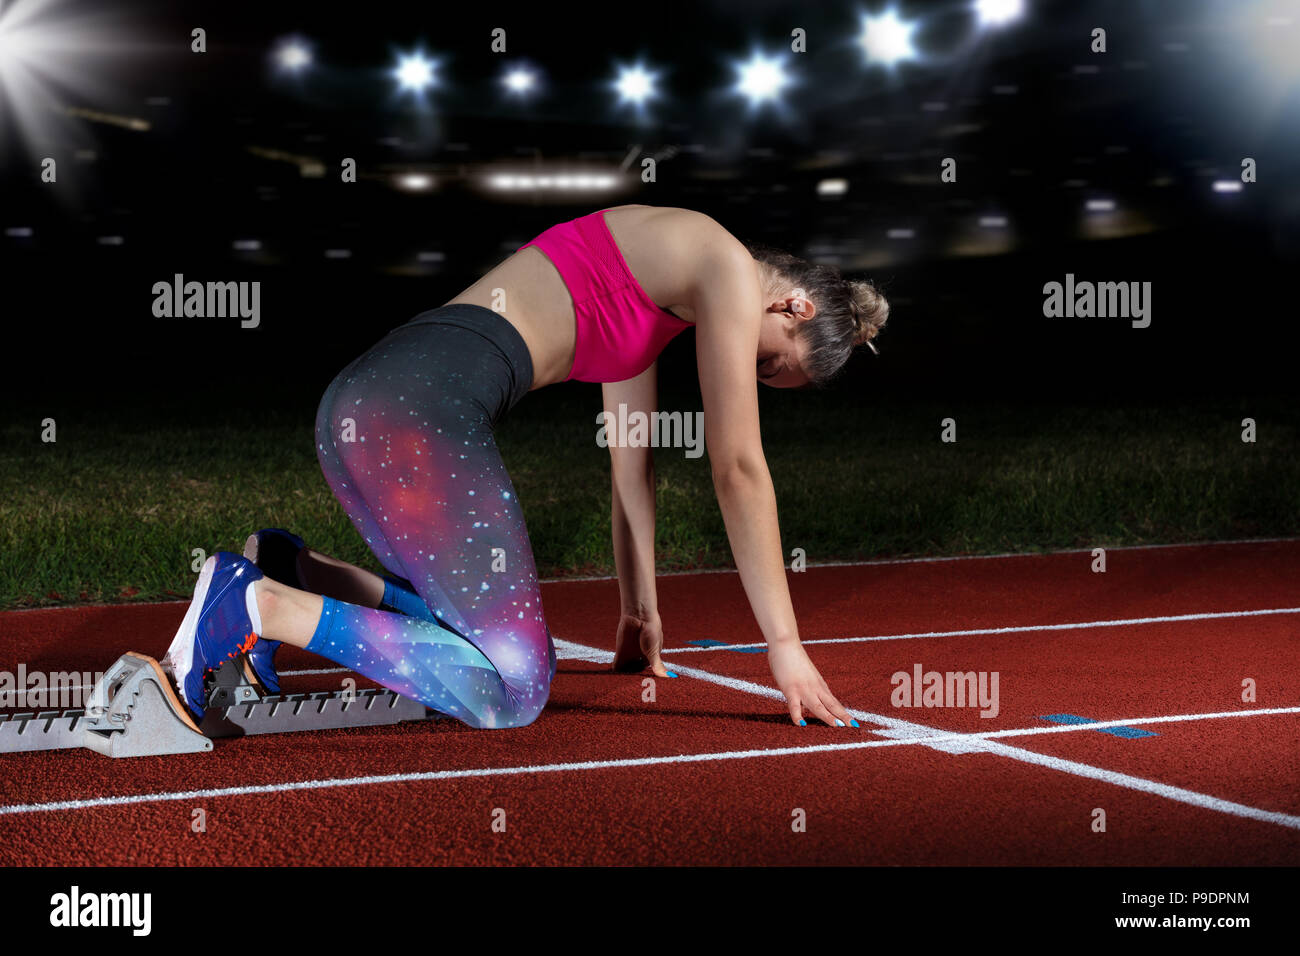 Frau Sprinter verlassen Start auf der Leichtathletikbahn. explodierende Start am Stadion mit Reflektoren Stockfoto